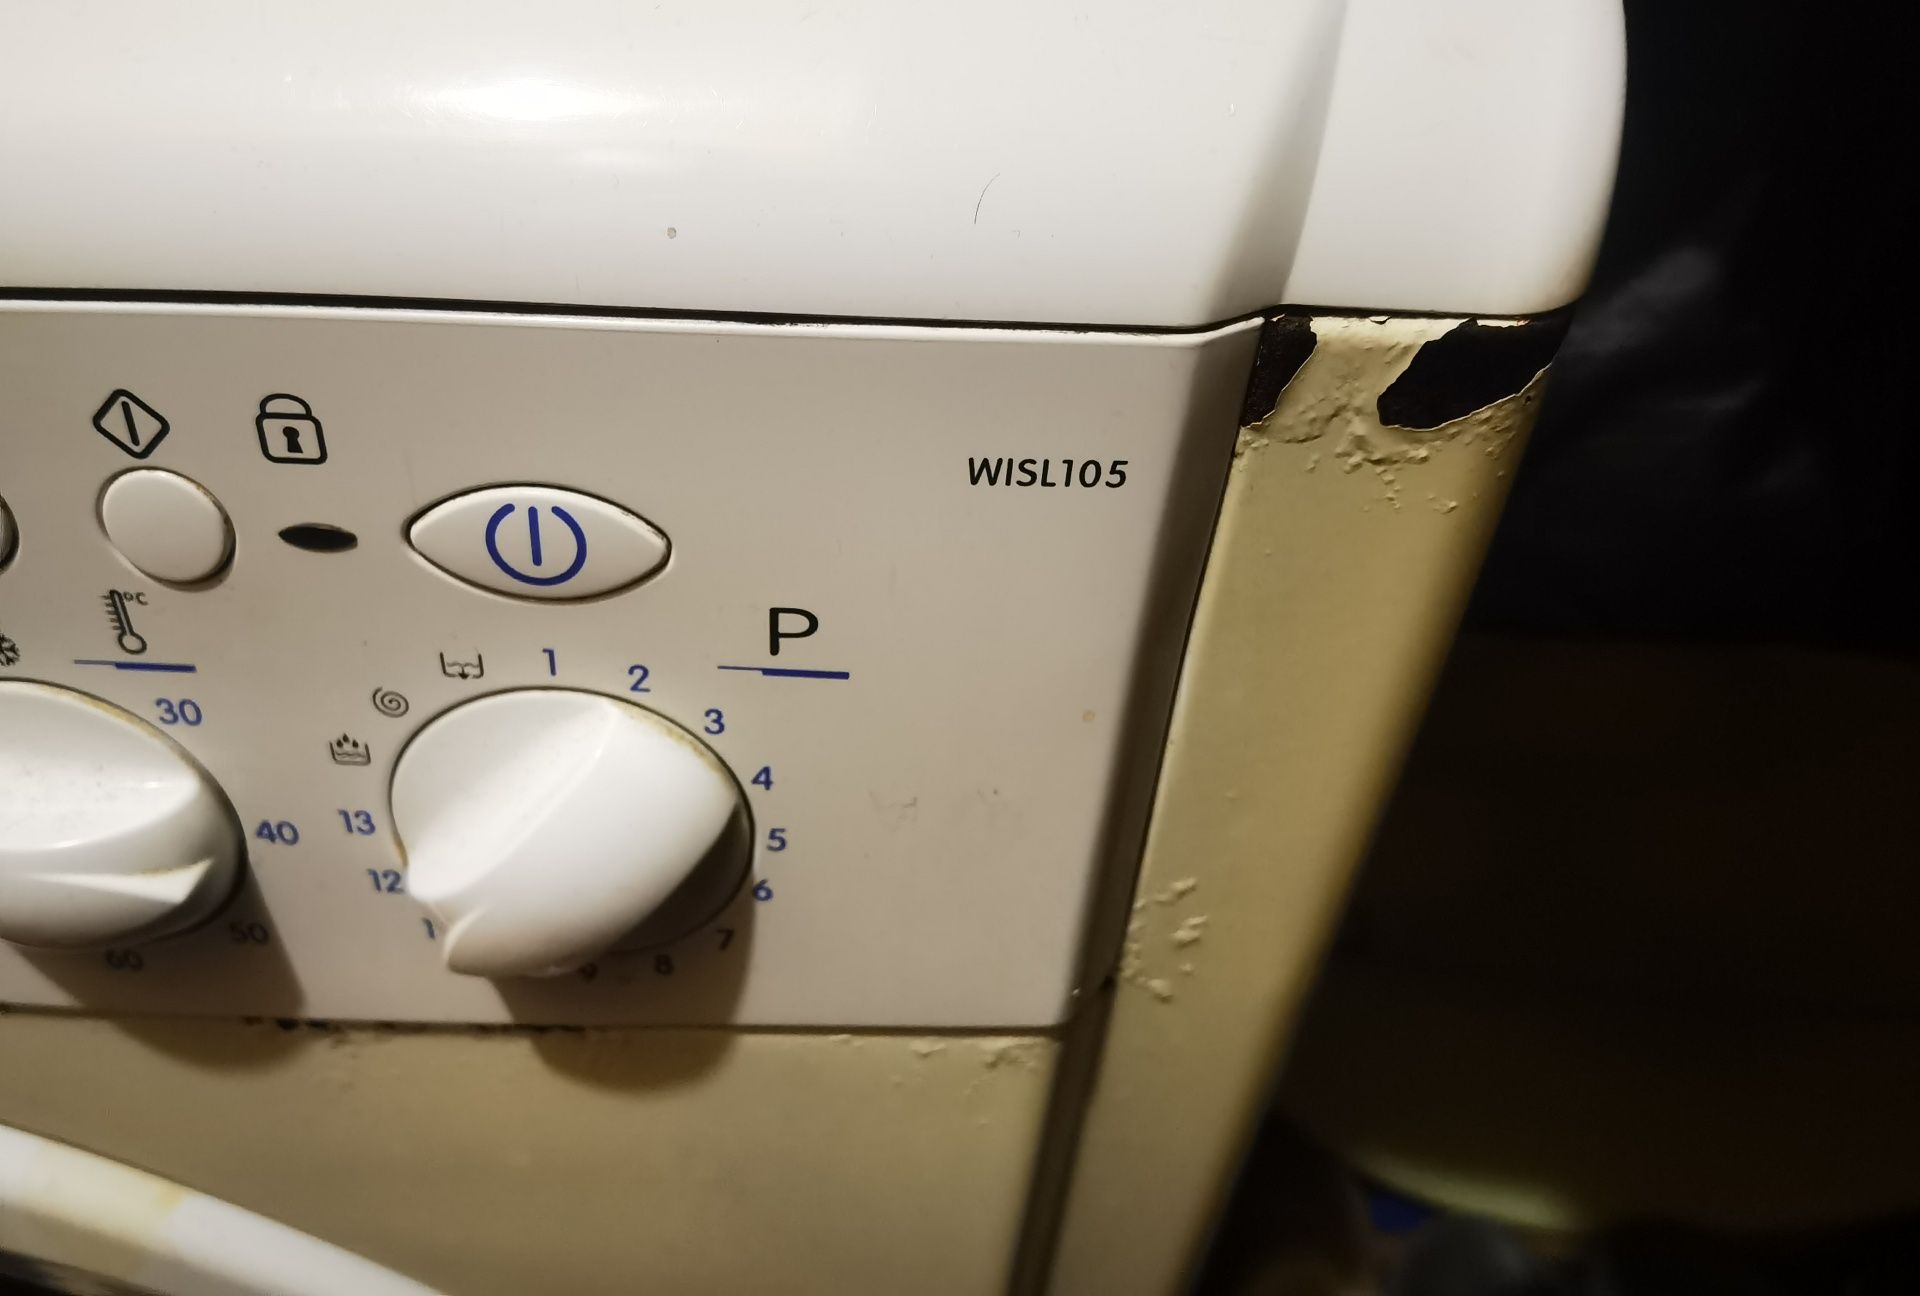 Продам стиральную машинку Indesit wisl 105